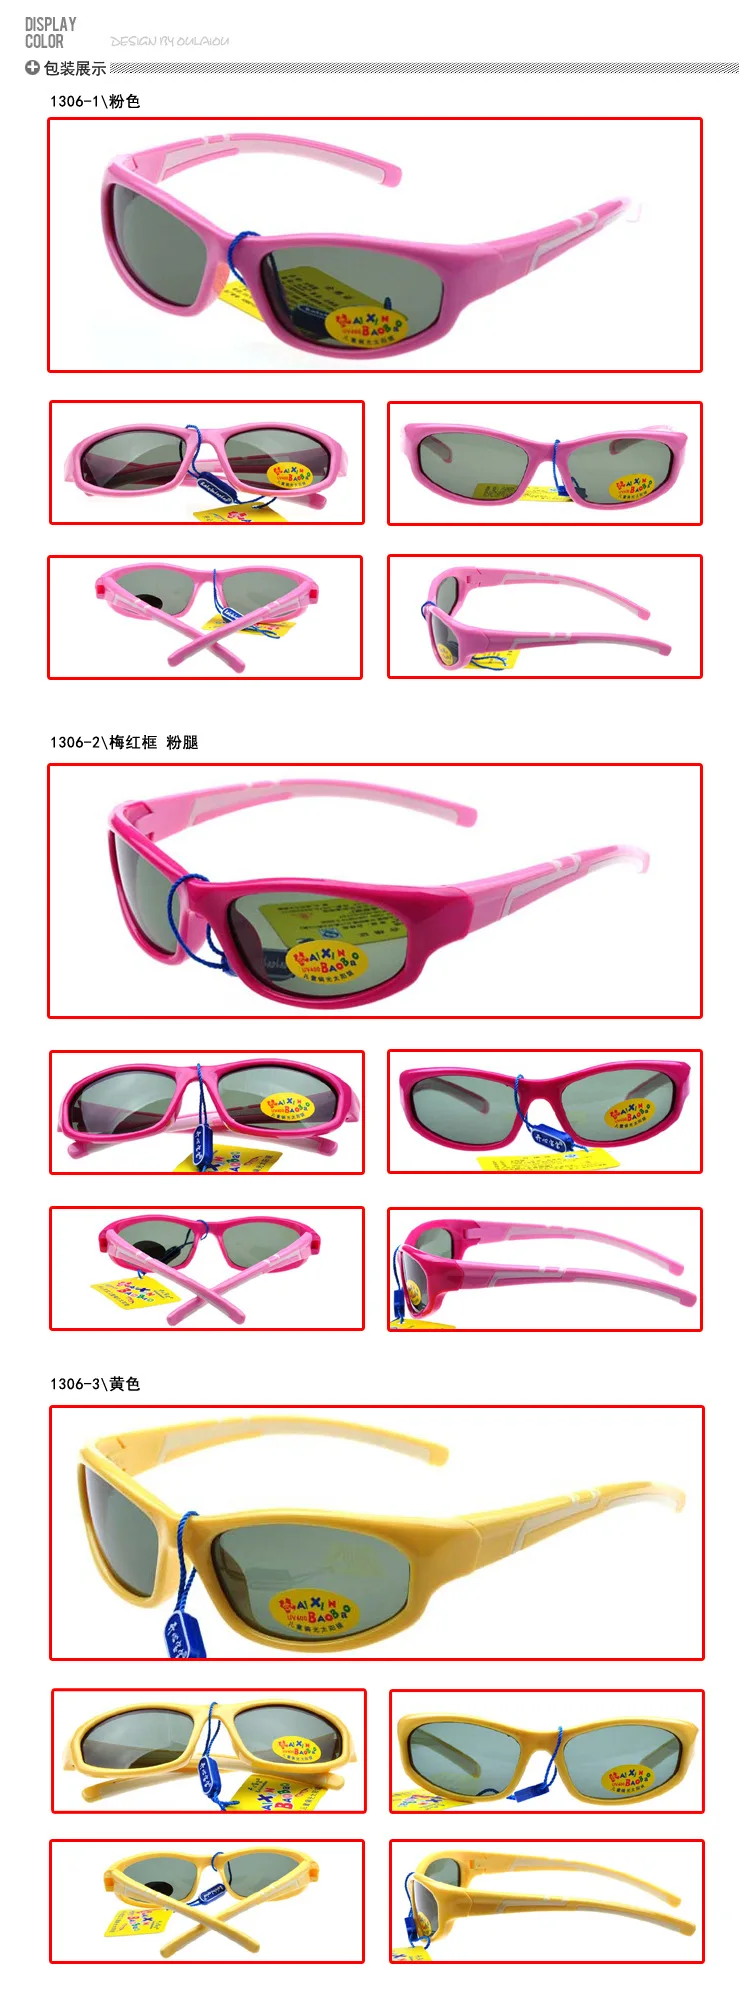 Силиконовые Детские поляризованные солнцезащитные очки, двухцветные кольца, защита глаз, детские солнцезащитные очки